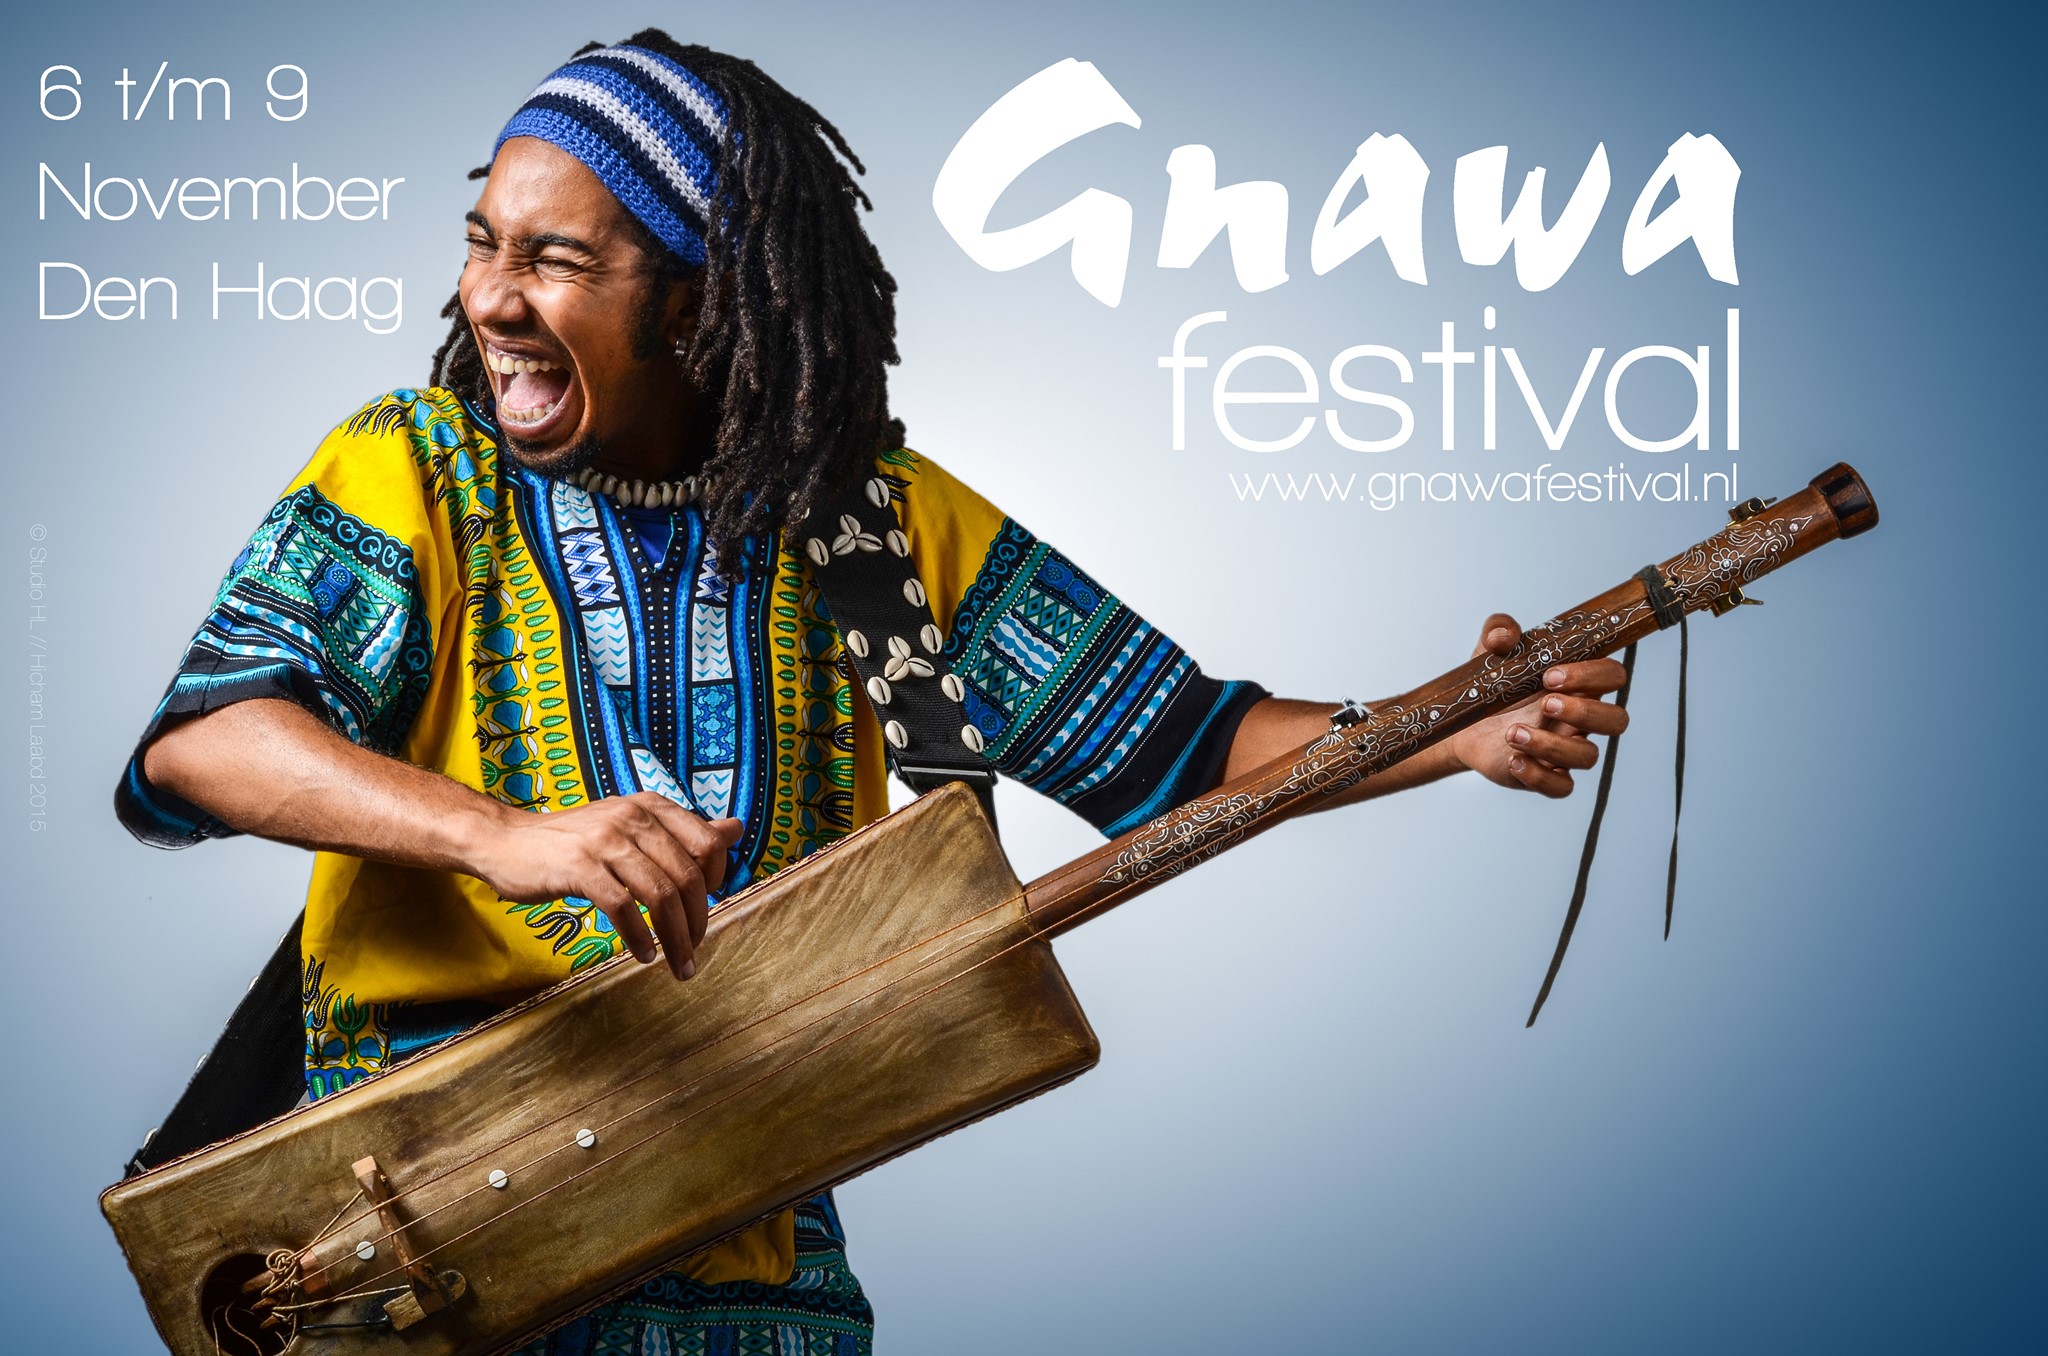 Gnawa Festival voor de tweede keer in Den Haag